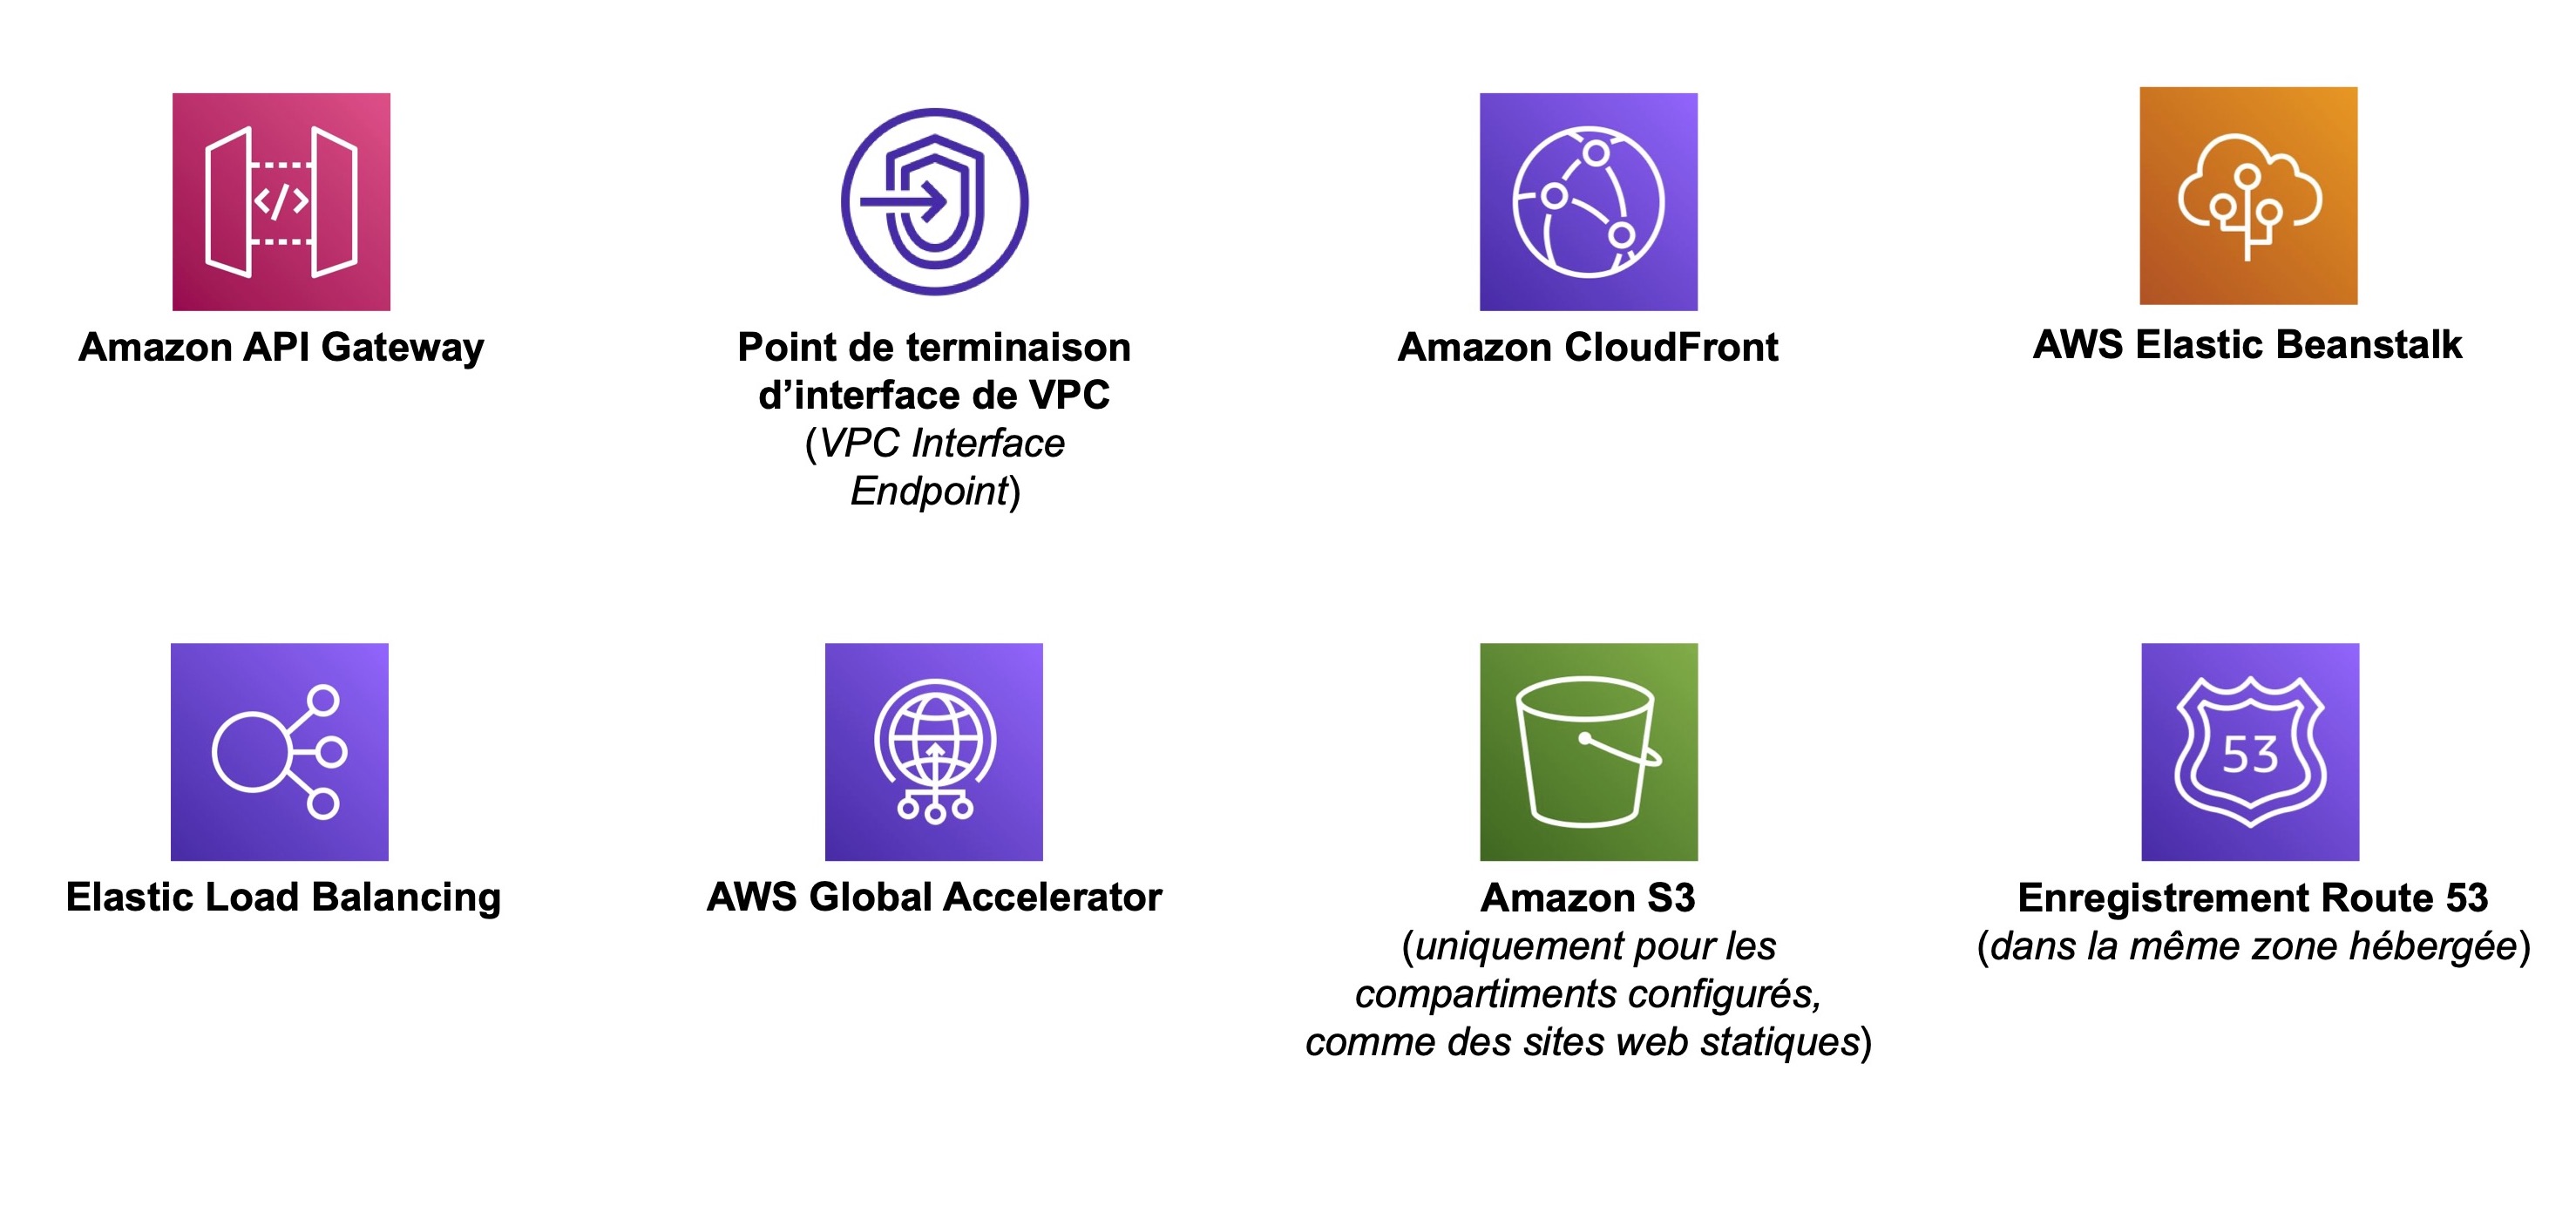 8 icônes de services AWS: Amazon API Gateway, Point de terminaison d’interface de VPC, Amazon CloudFront, AWS Elastic Beanstalk, Elastic Load Balancing, AWS Global Accelerator, Amazon S3 et Enregistrement Route S3.